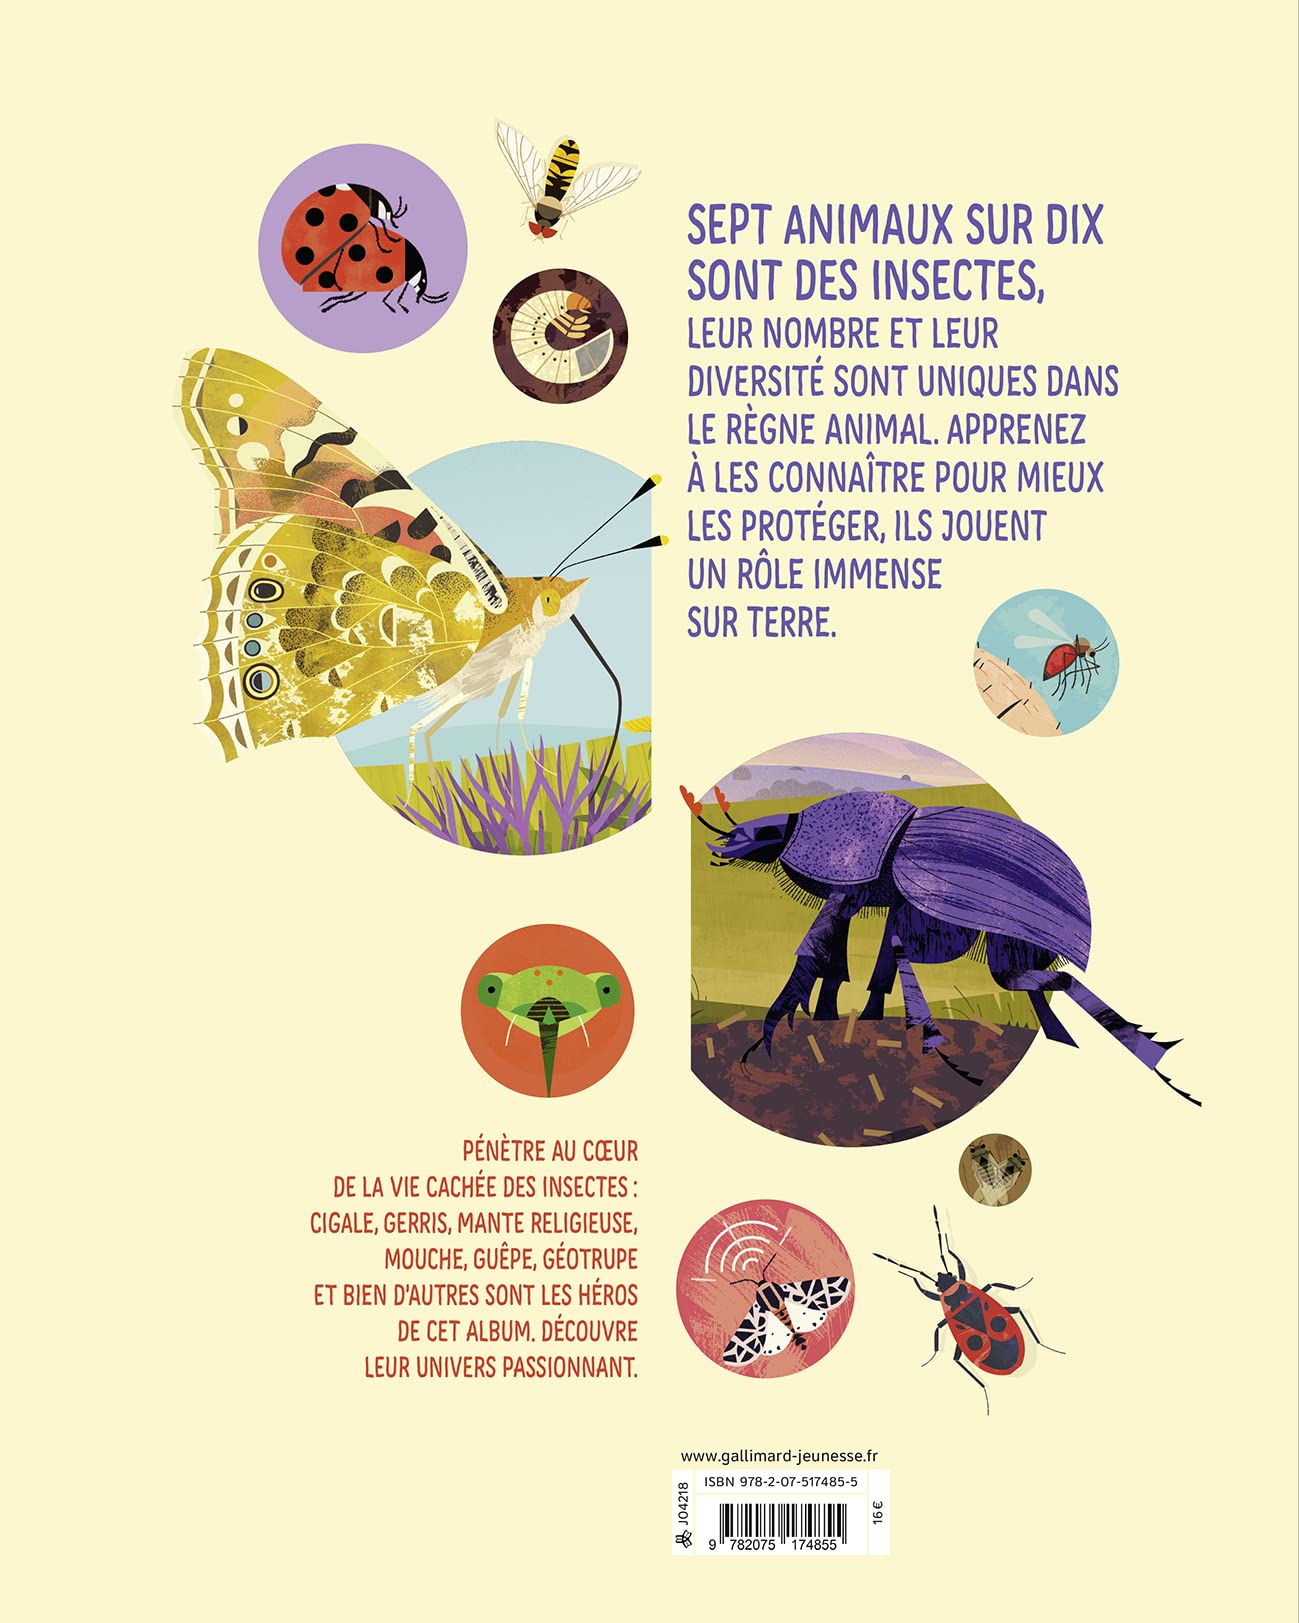 Insectes - Leur vie cachée, minuscule et essentielle